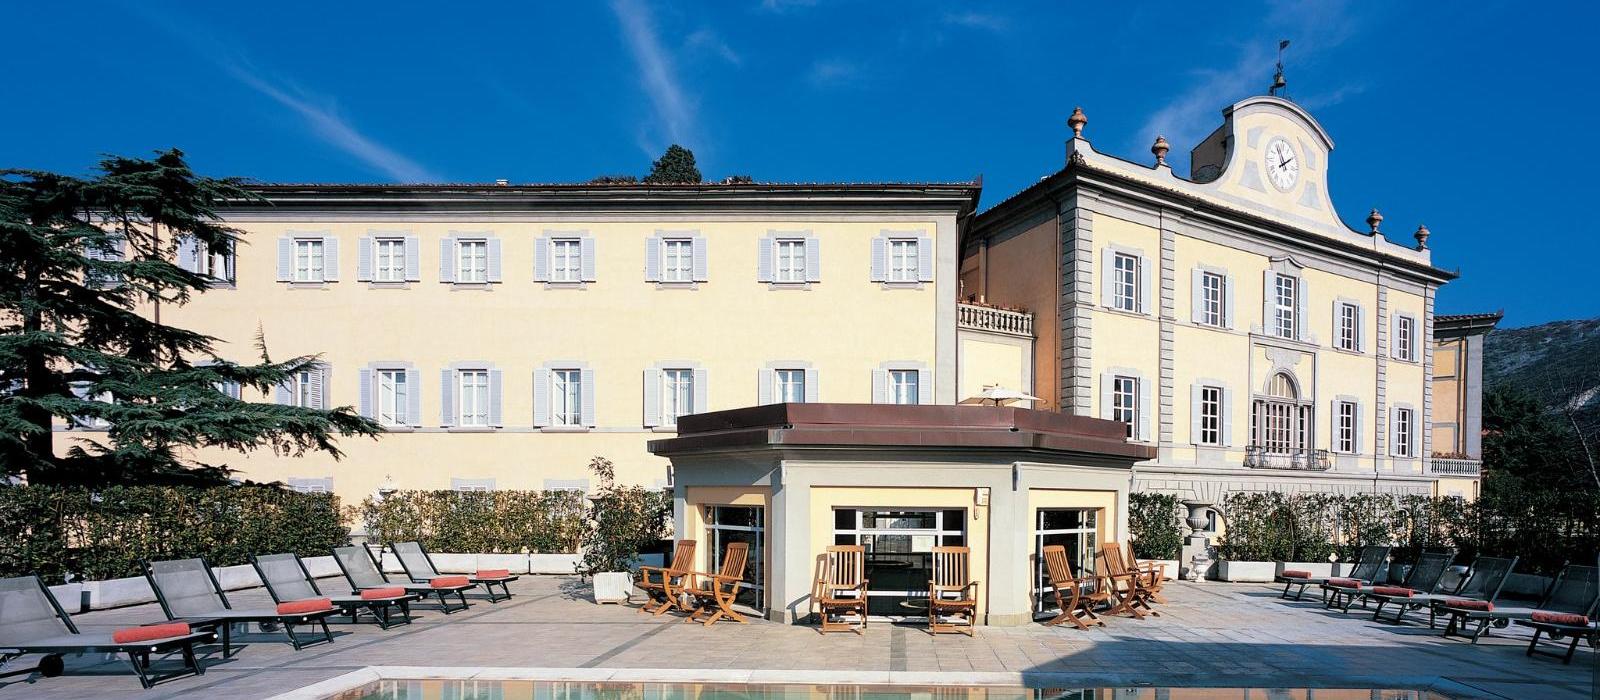 巴尼迪比萨皇宫水疗酒店(Bagni di Pisa) 图片  www.lhw.cn